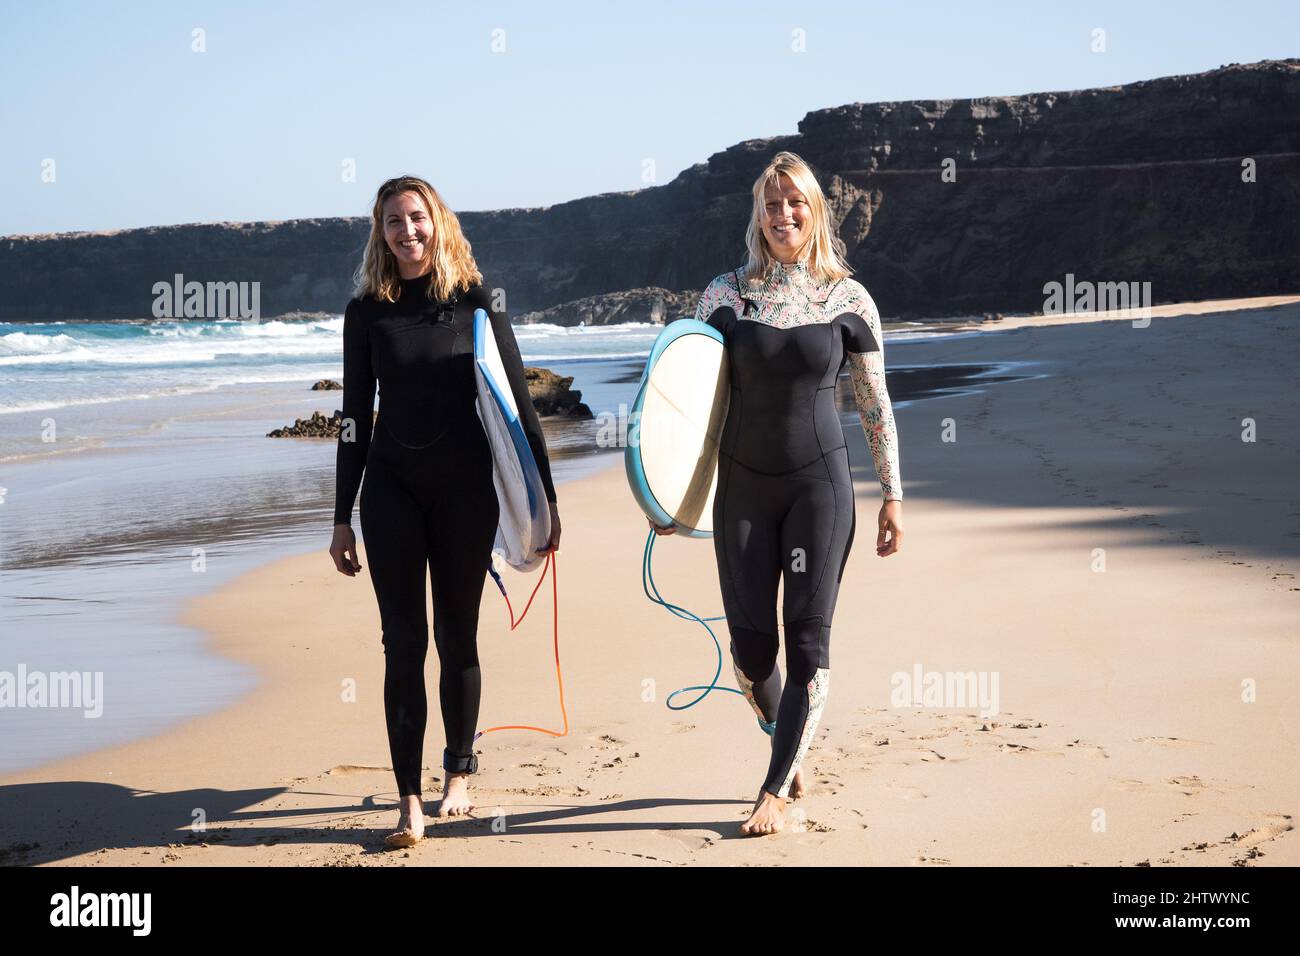 Surfer hembras caminando en la orilla de la playa. Están sonriendo y sosteniendo sus tablas de surf. Foto de stock